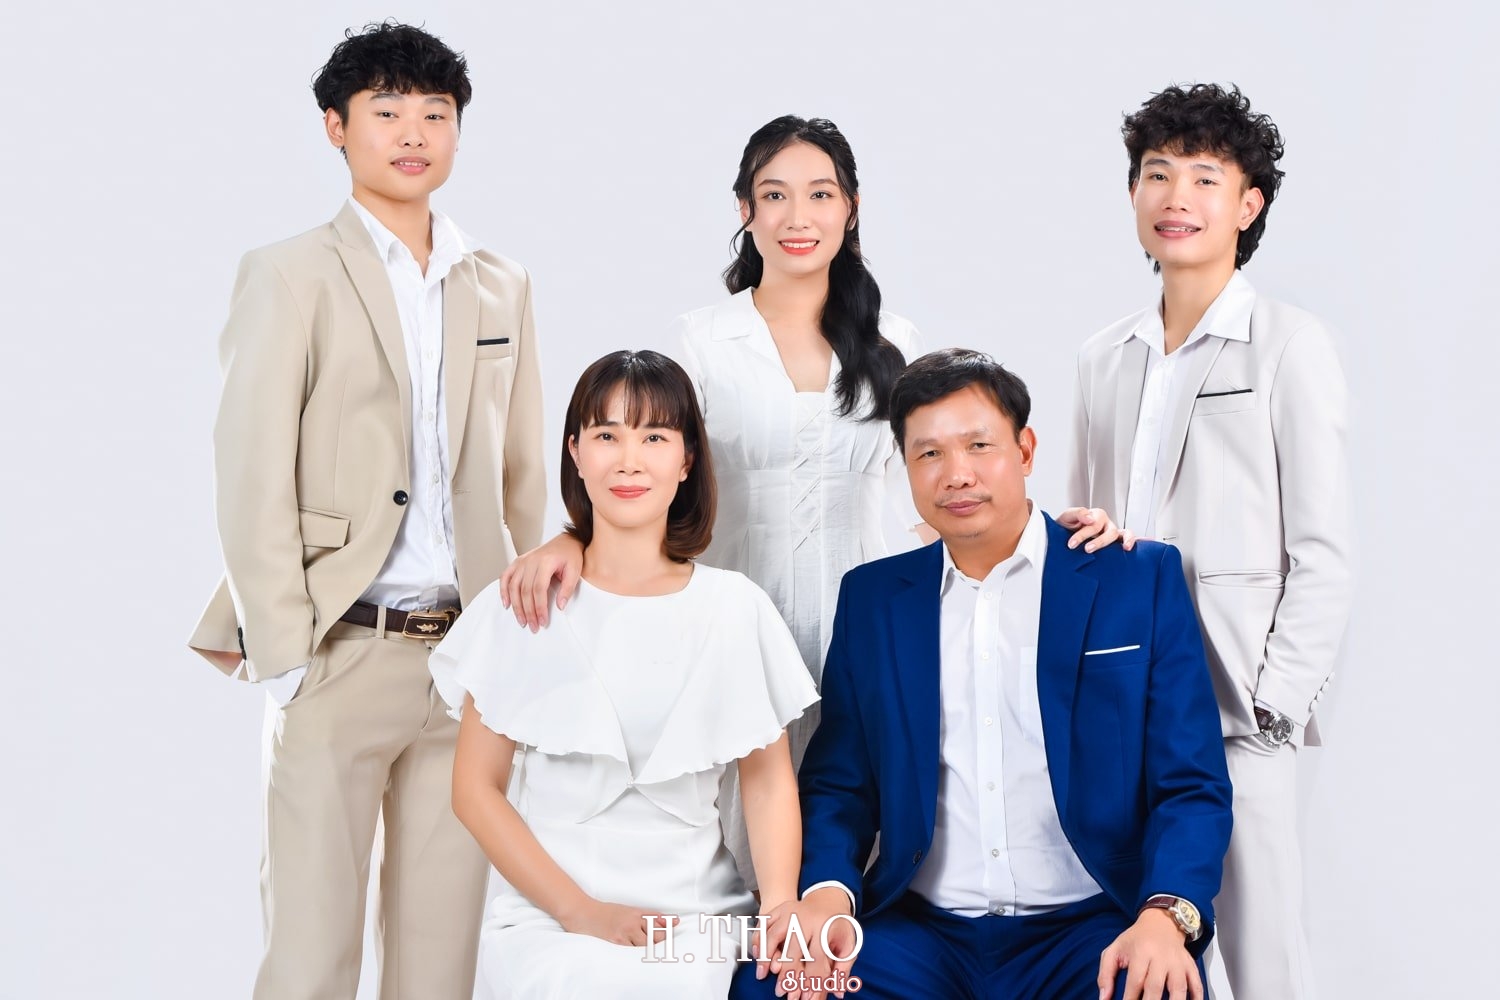 Anh gia dinh 5 nguoi 2 min - 45 cách tạo dáng chụp ảnh gia đình 4 người ấn tượng nhất - HThao Studio